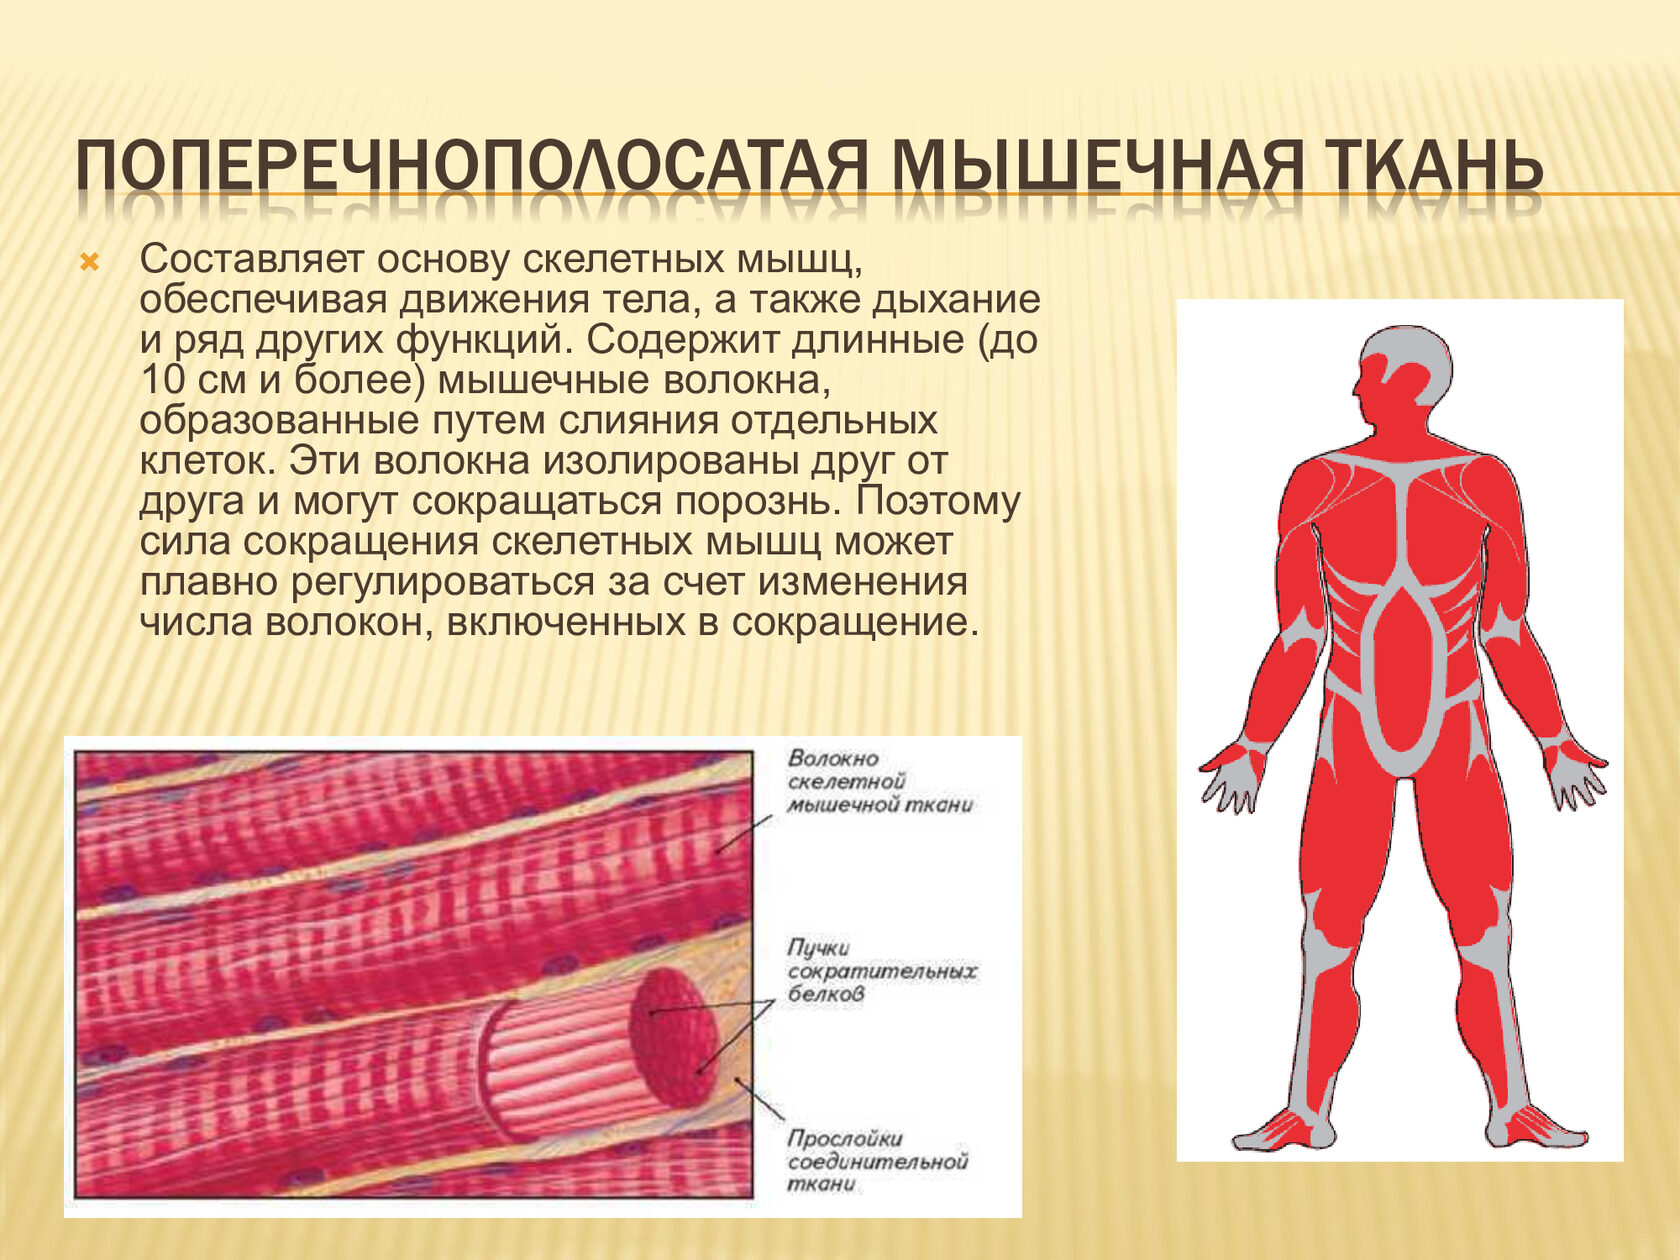 Скелетная поперечно полосатая мускулатура состоит из. 8. Поперечнополосатая Скелетная мышечная ткань.. Что образует Скелетная поперечно полосатая мышечная ткань. Поперечнополосатая машца. Поперечнополасатая мускулатура.